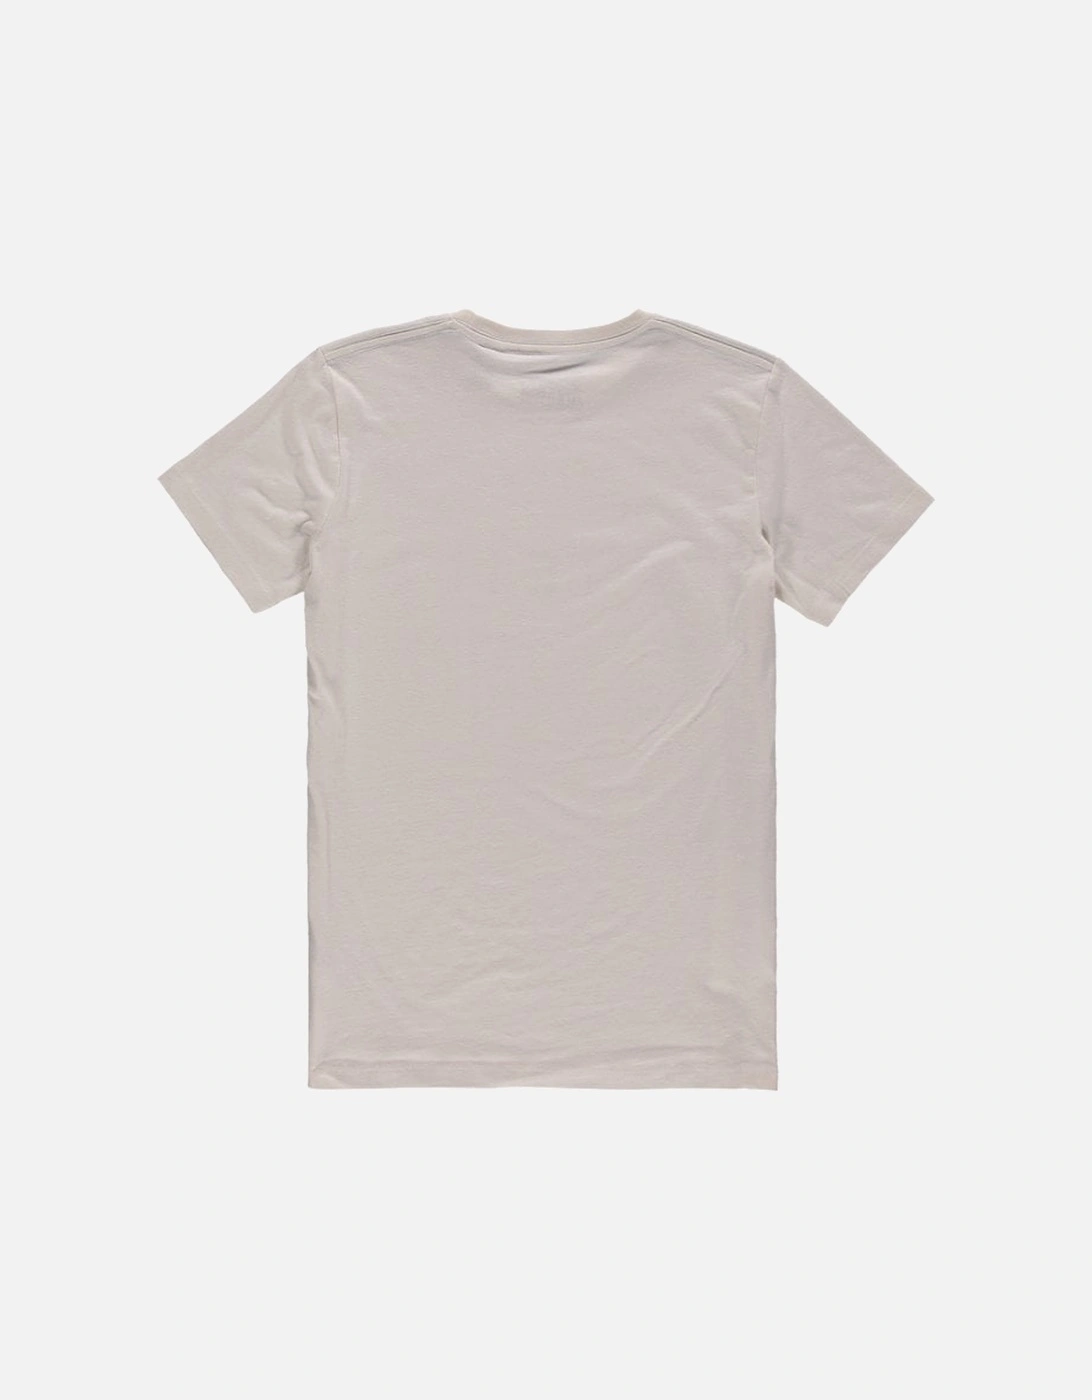 Boys California Crew-Neck T-Shirt, Powder White